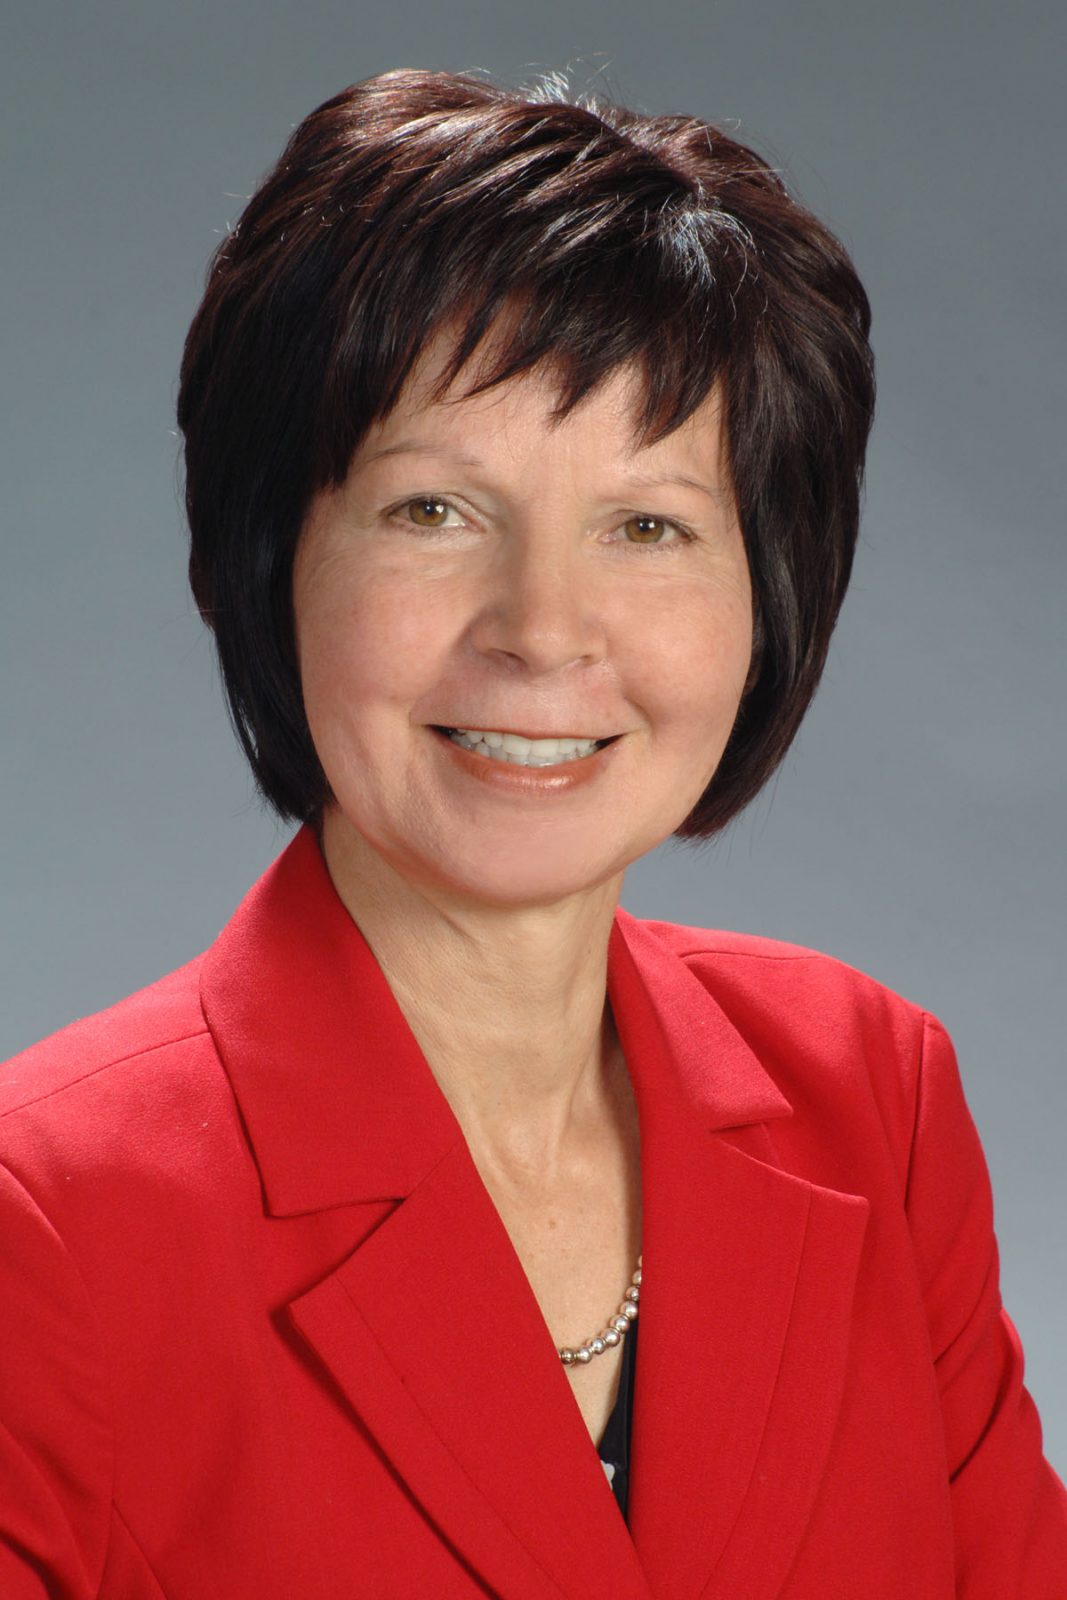 La mairesse sortante de Wickham, Carole Côté, dévoile ses priorités